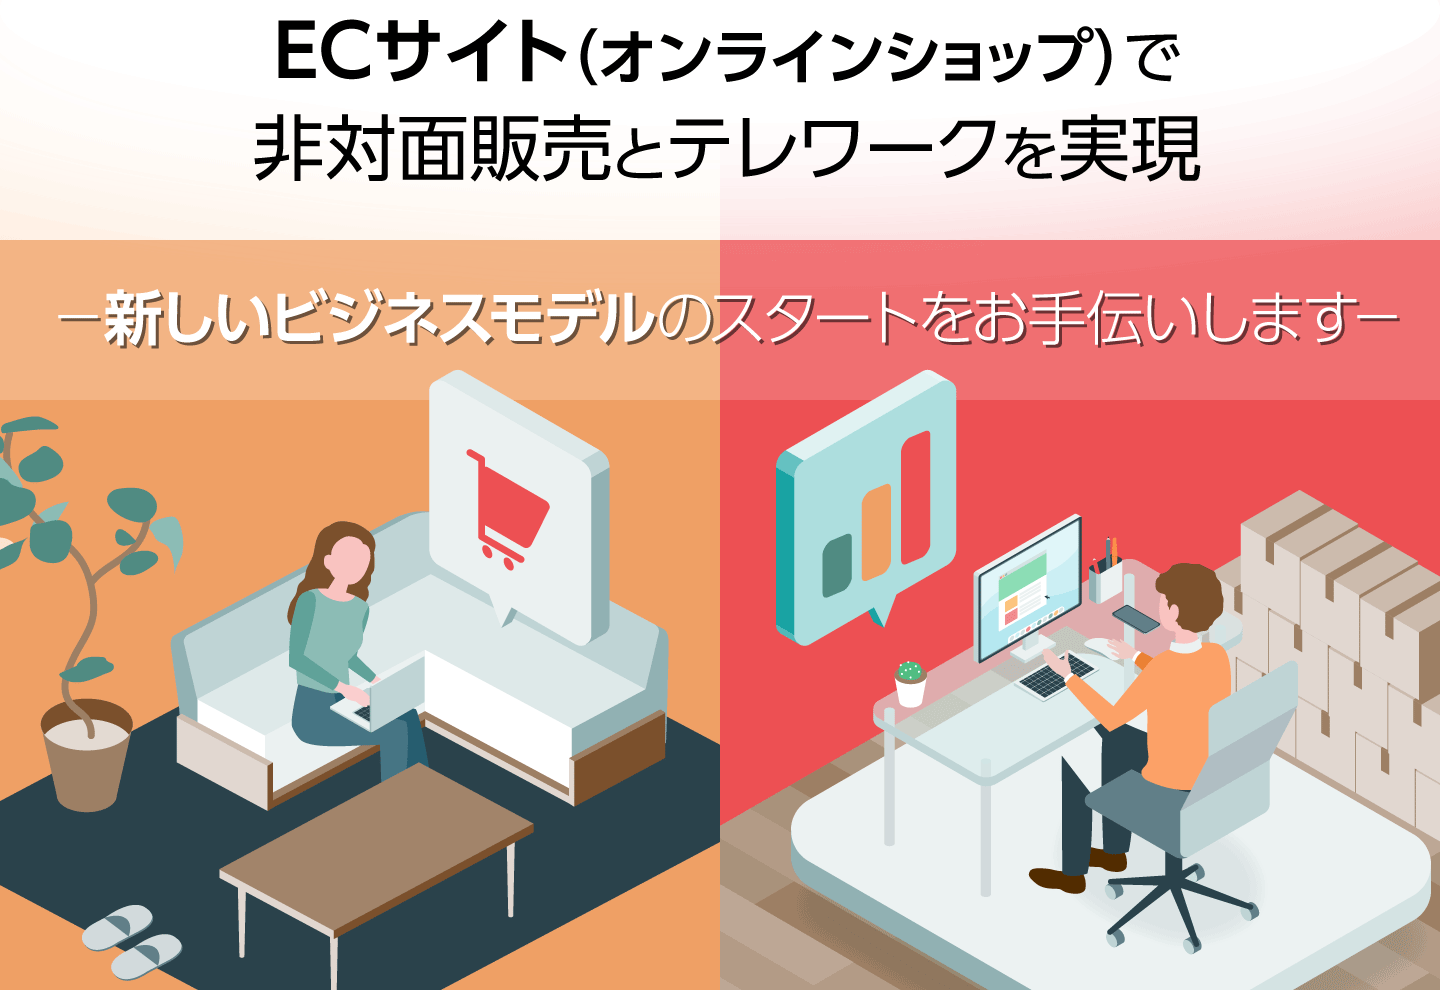 ECサイト（オンラインショップ）で非対面販売とテレワークを実現